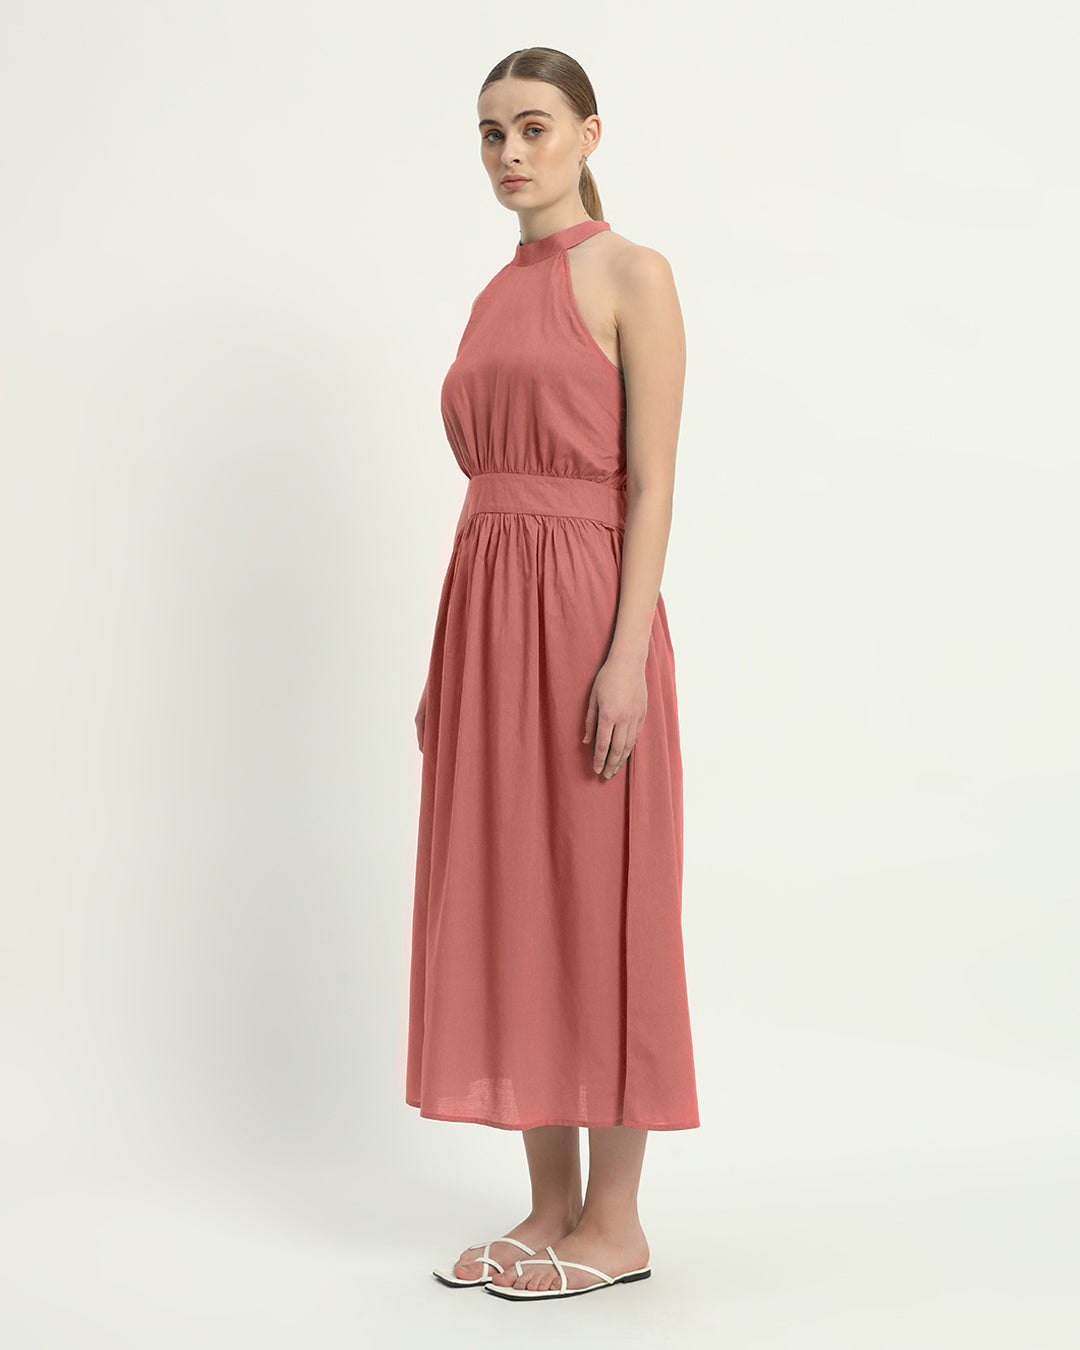 The Massena  Ivory Pink Cotton Dress